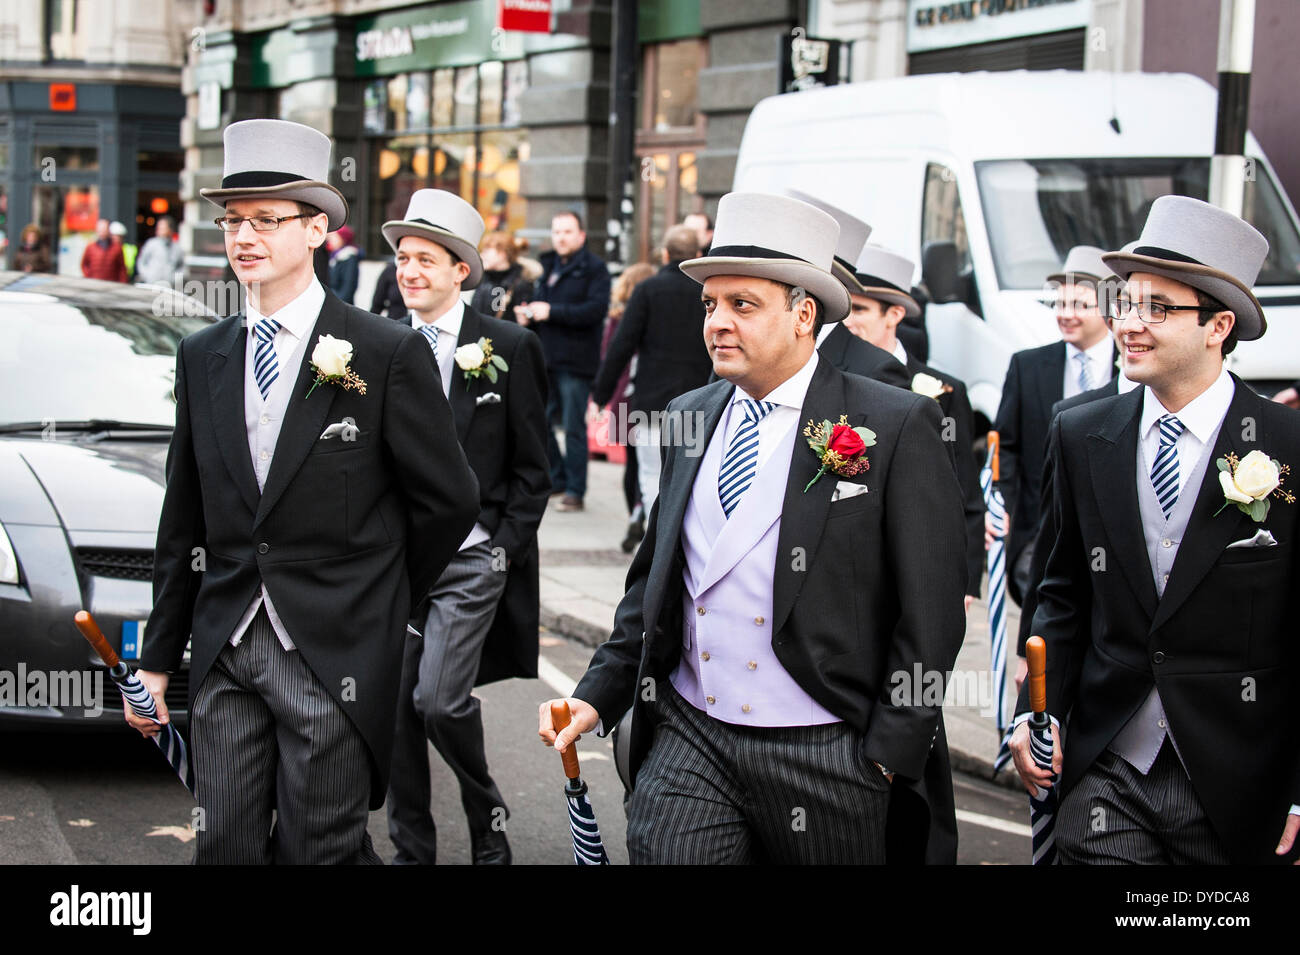 Eine Gruppe von Männern, die auf ihrem Weg zu einer Hochzeit Spitze Hüte tragen. Stockfoto